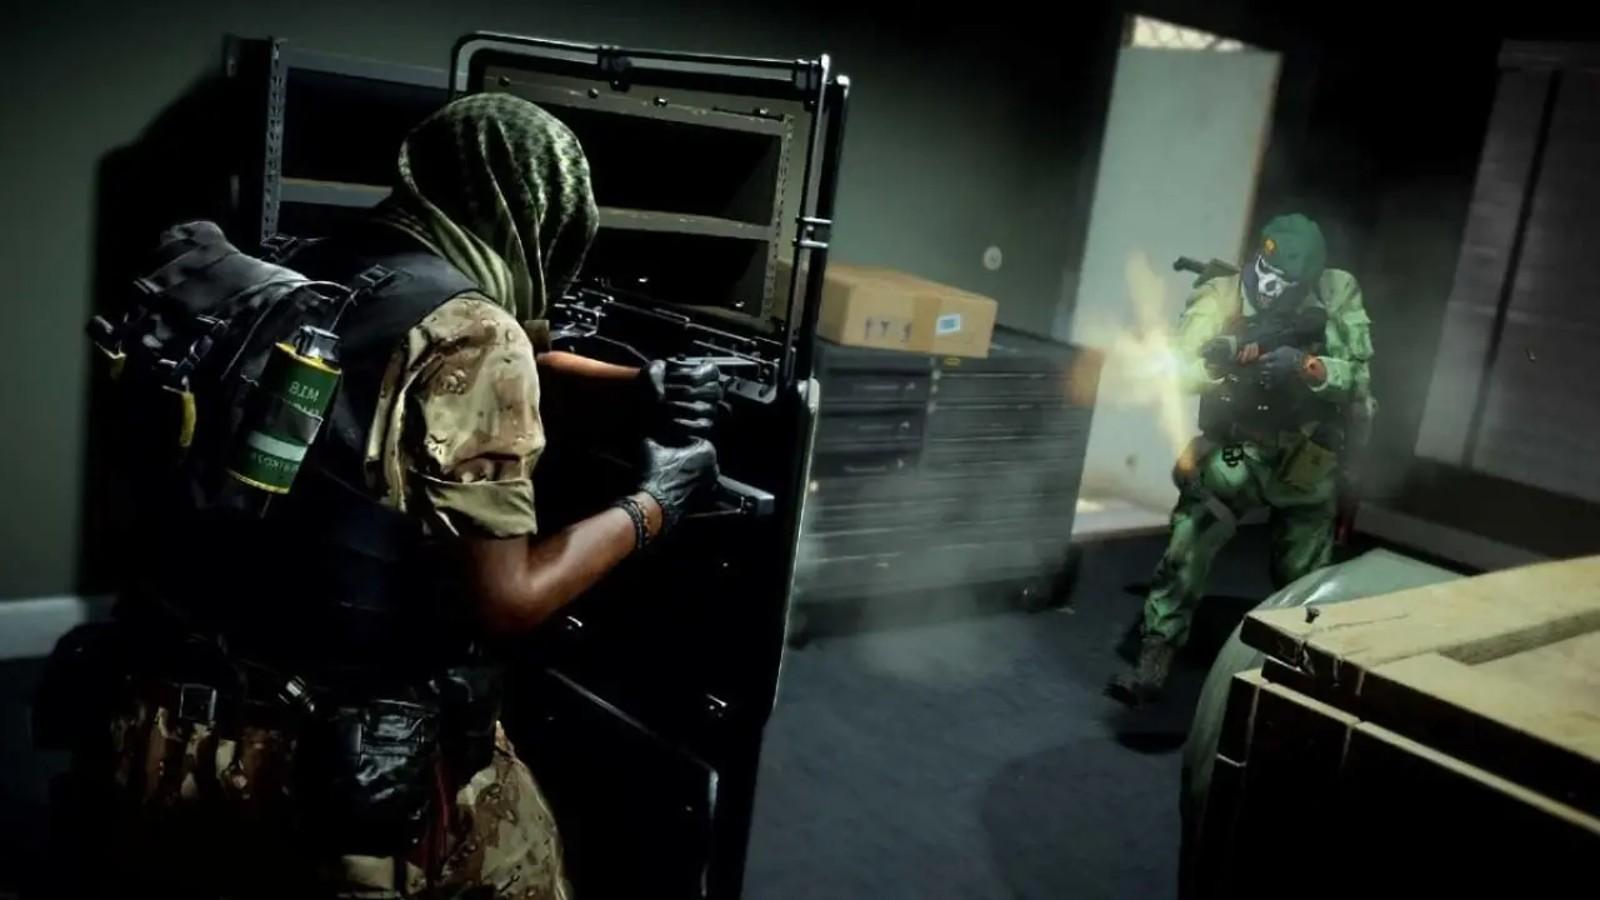 Warzone 2 players fear riot shields after secret Season 5 buff - Dexerto